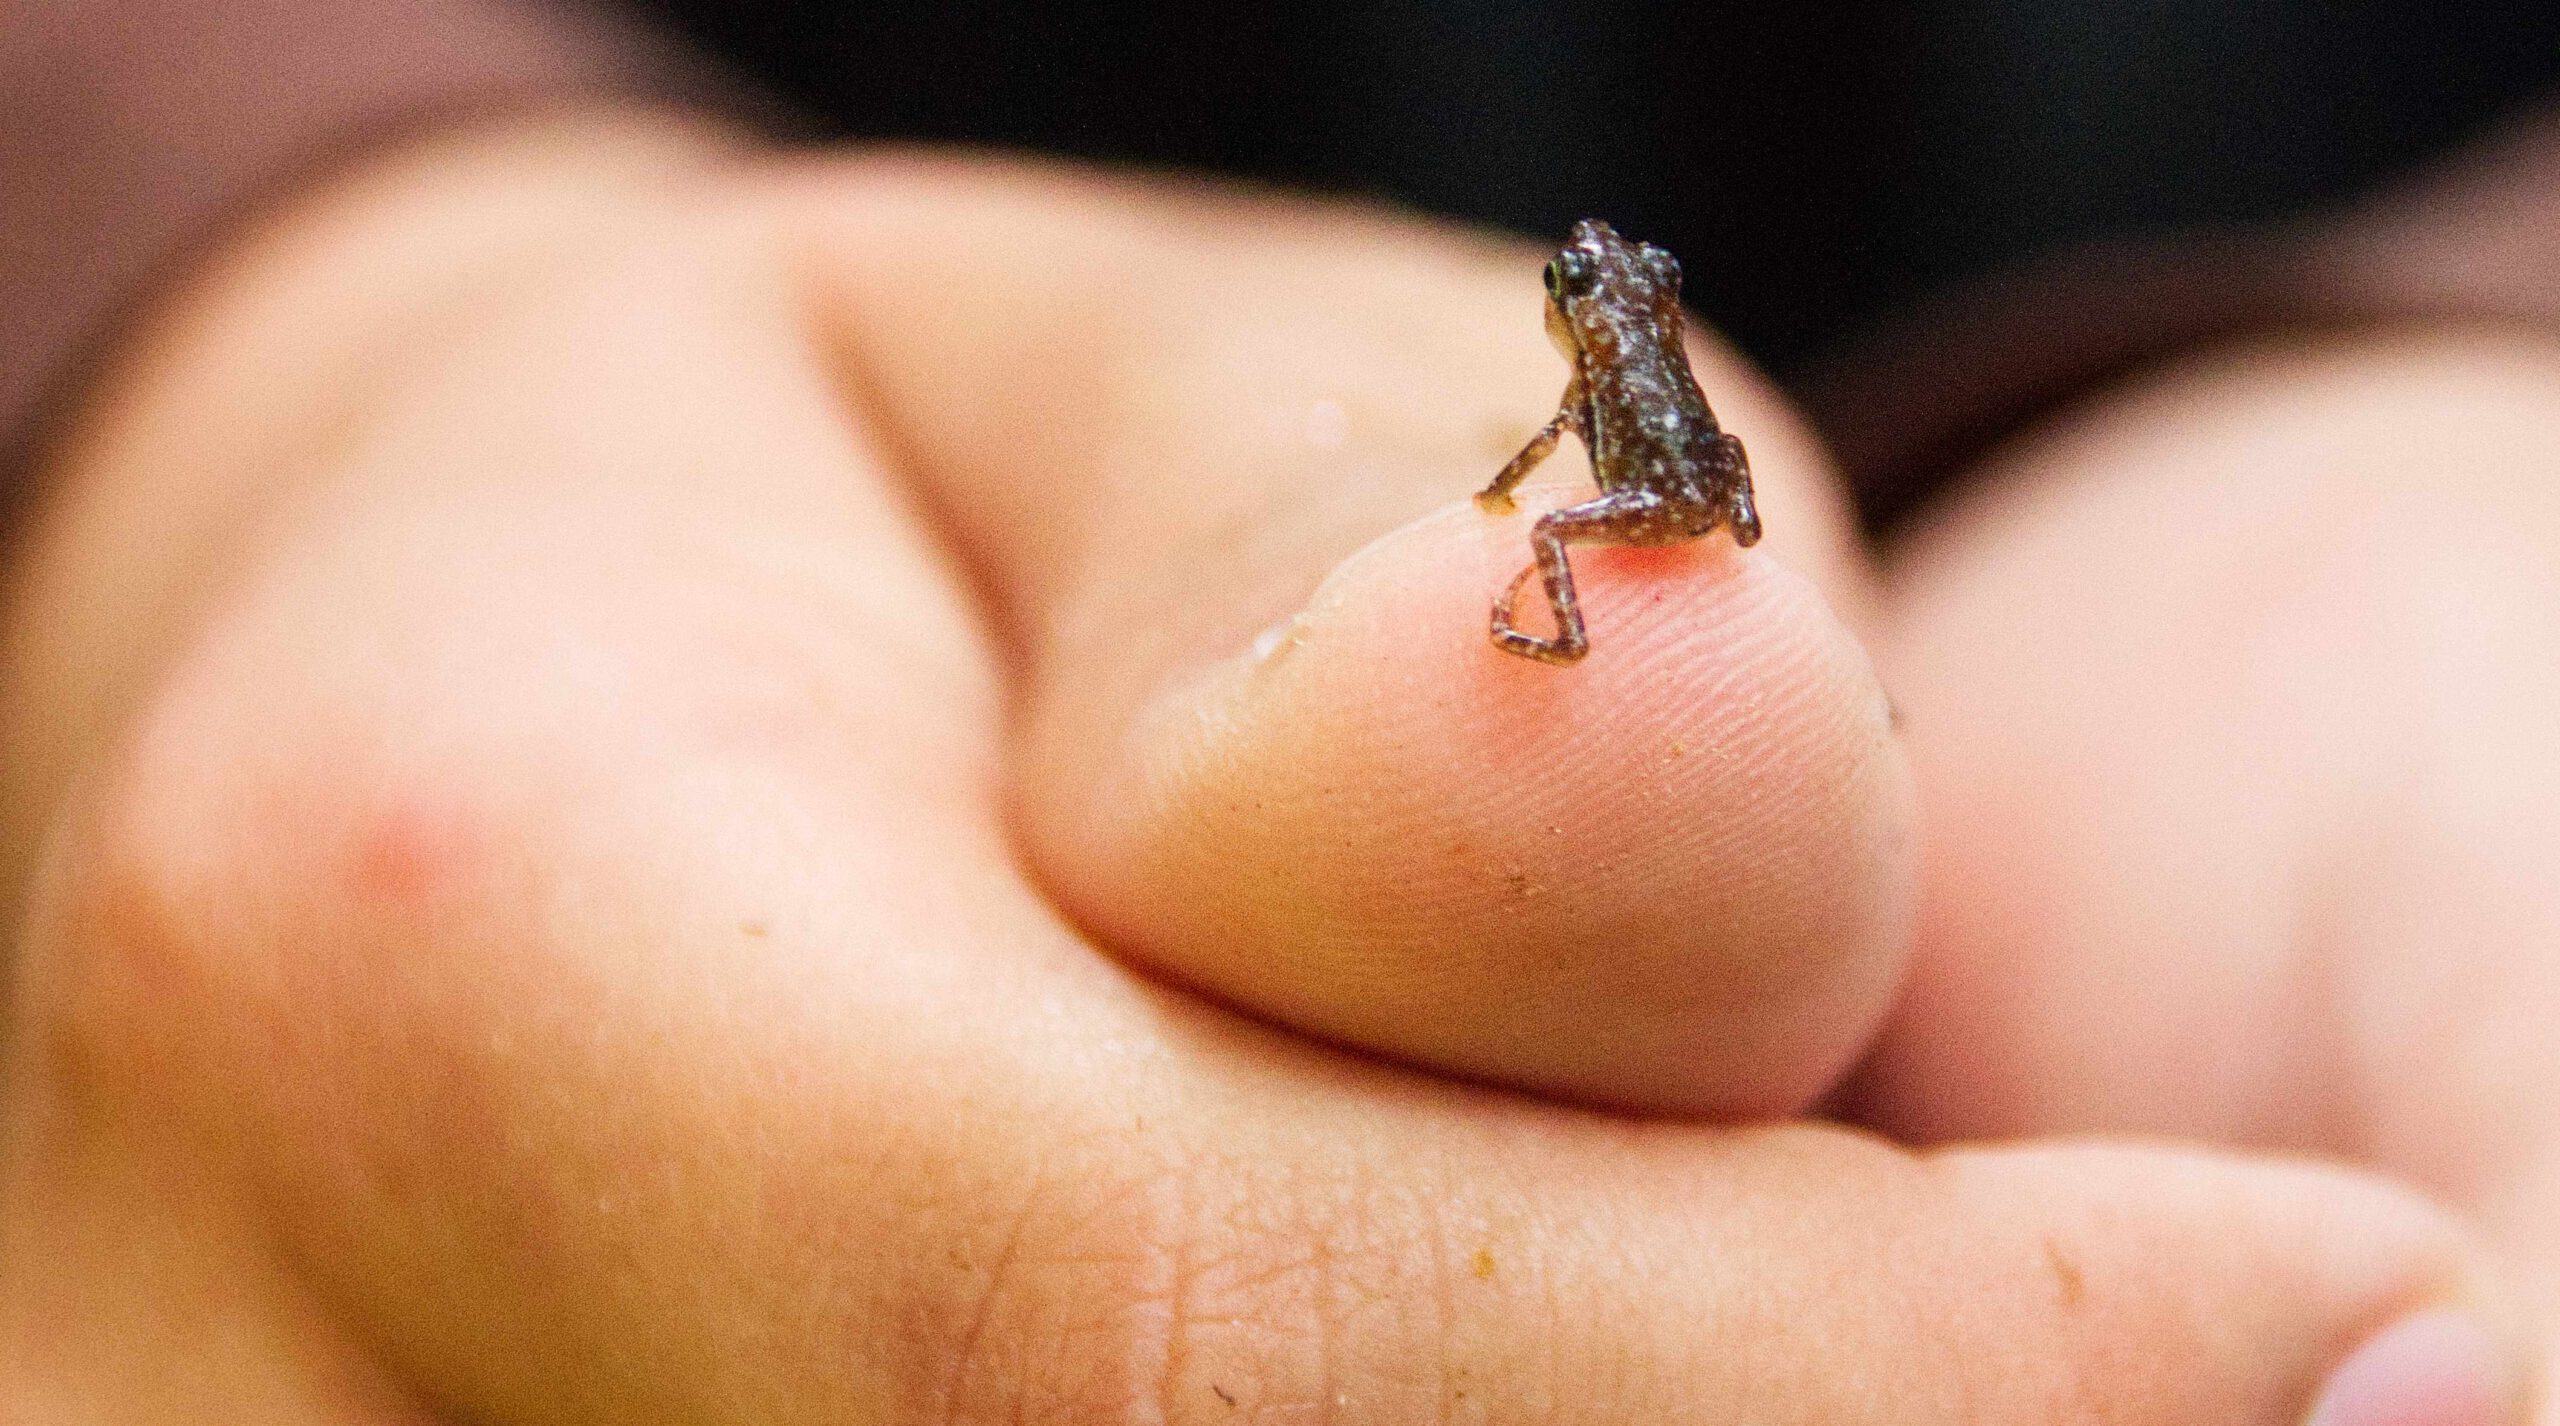 Kleiner Frosch auf Finger, Urwald Cuyabeno, Ecuador